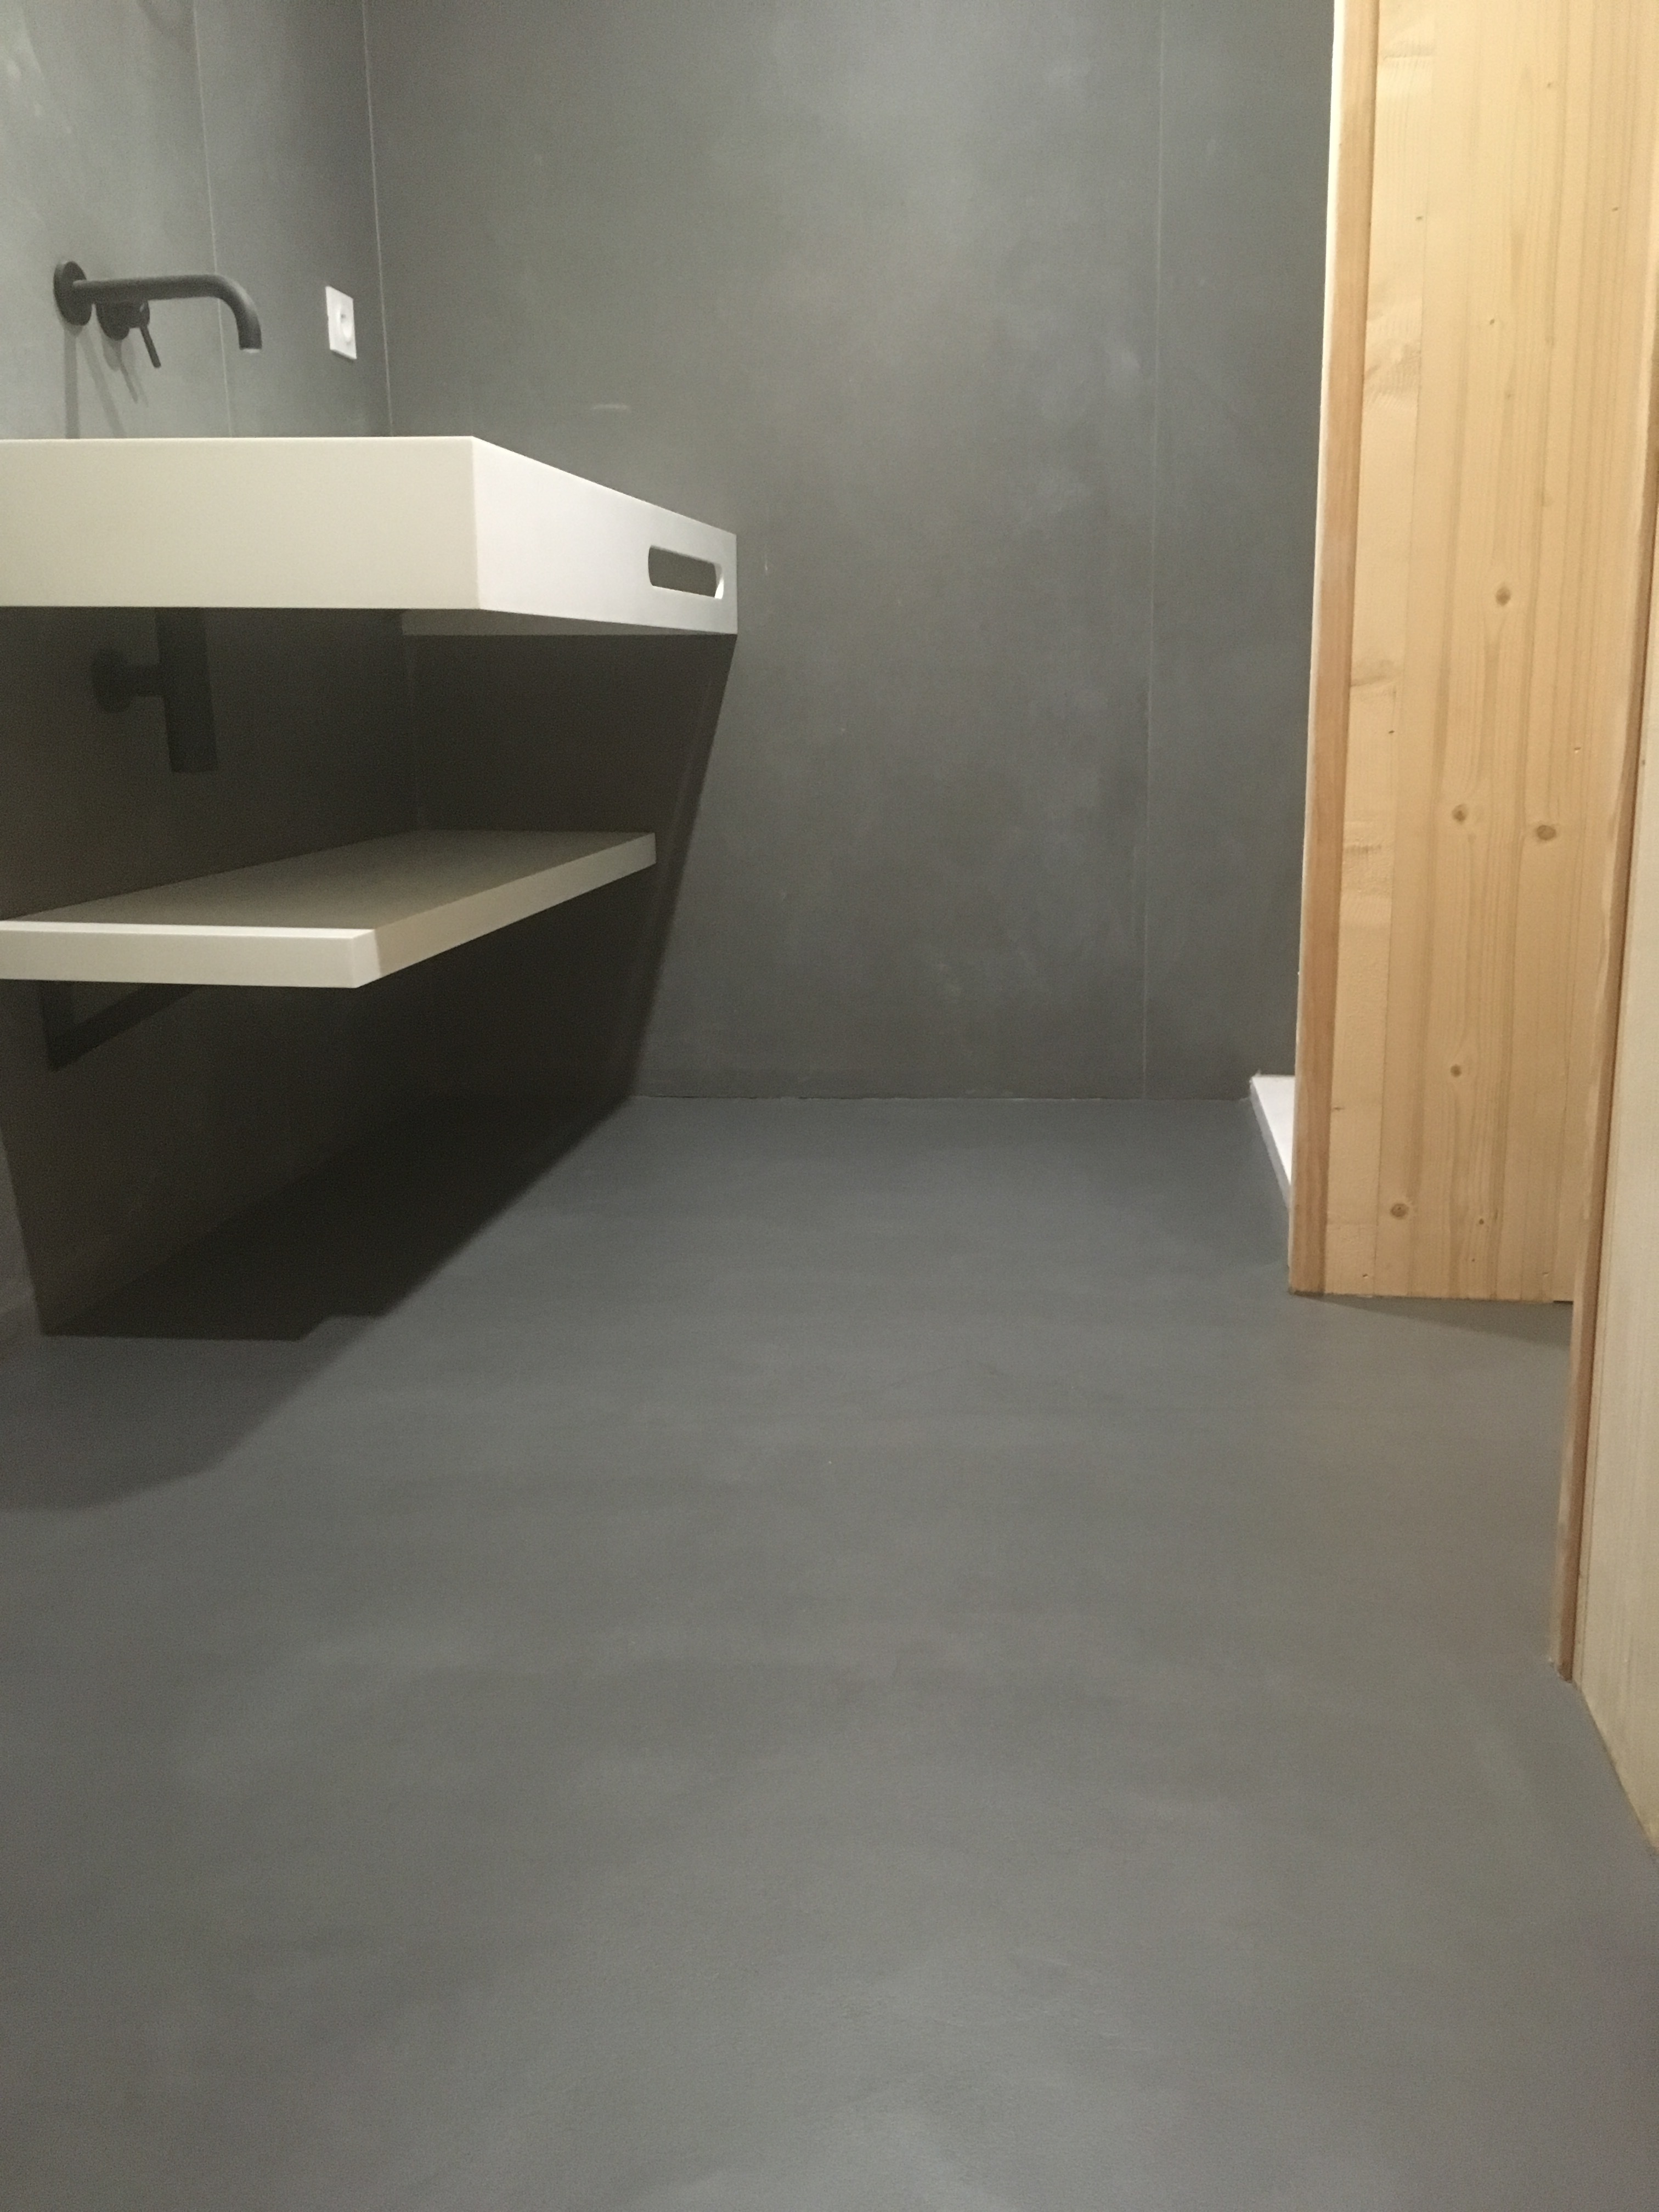 splendide sol moderne en béton ciré vernis mat couleur gris orbital Cap ferret pour un architecte